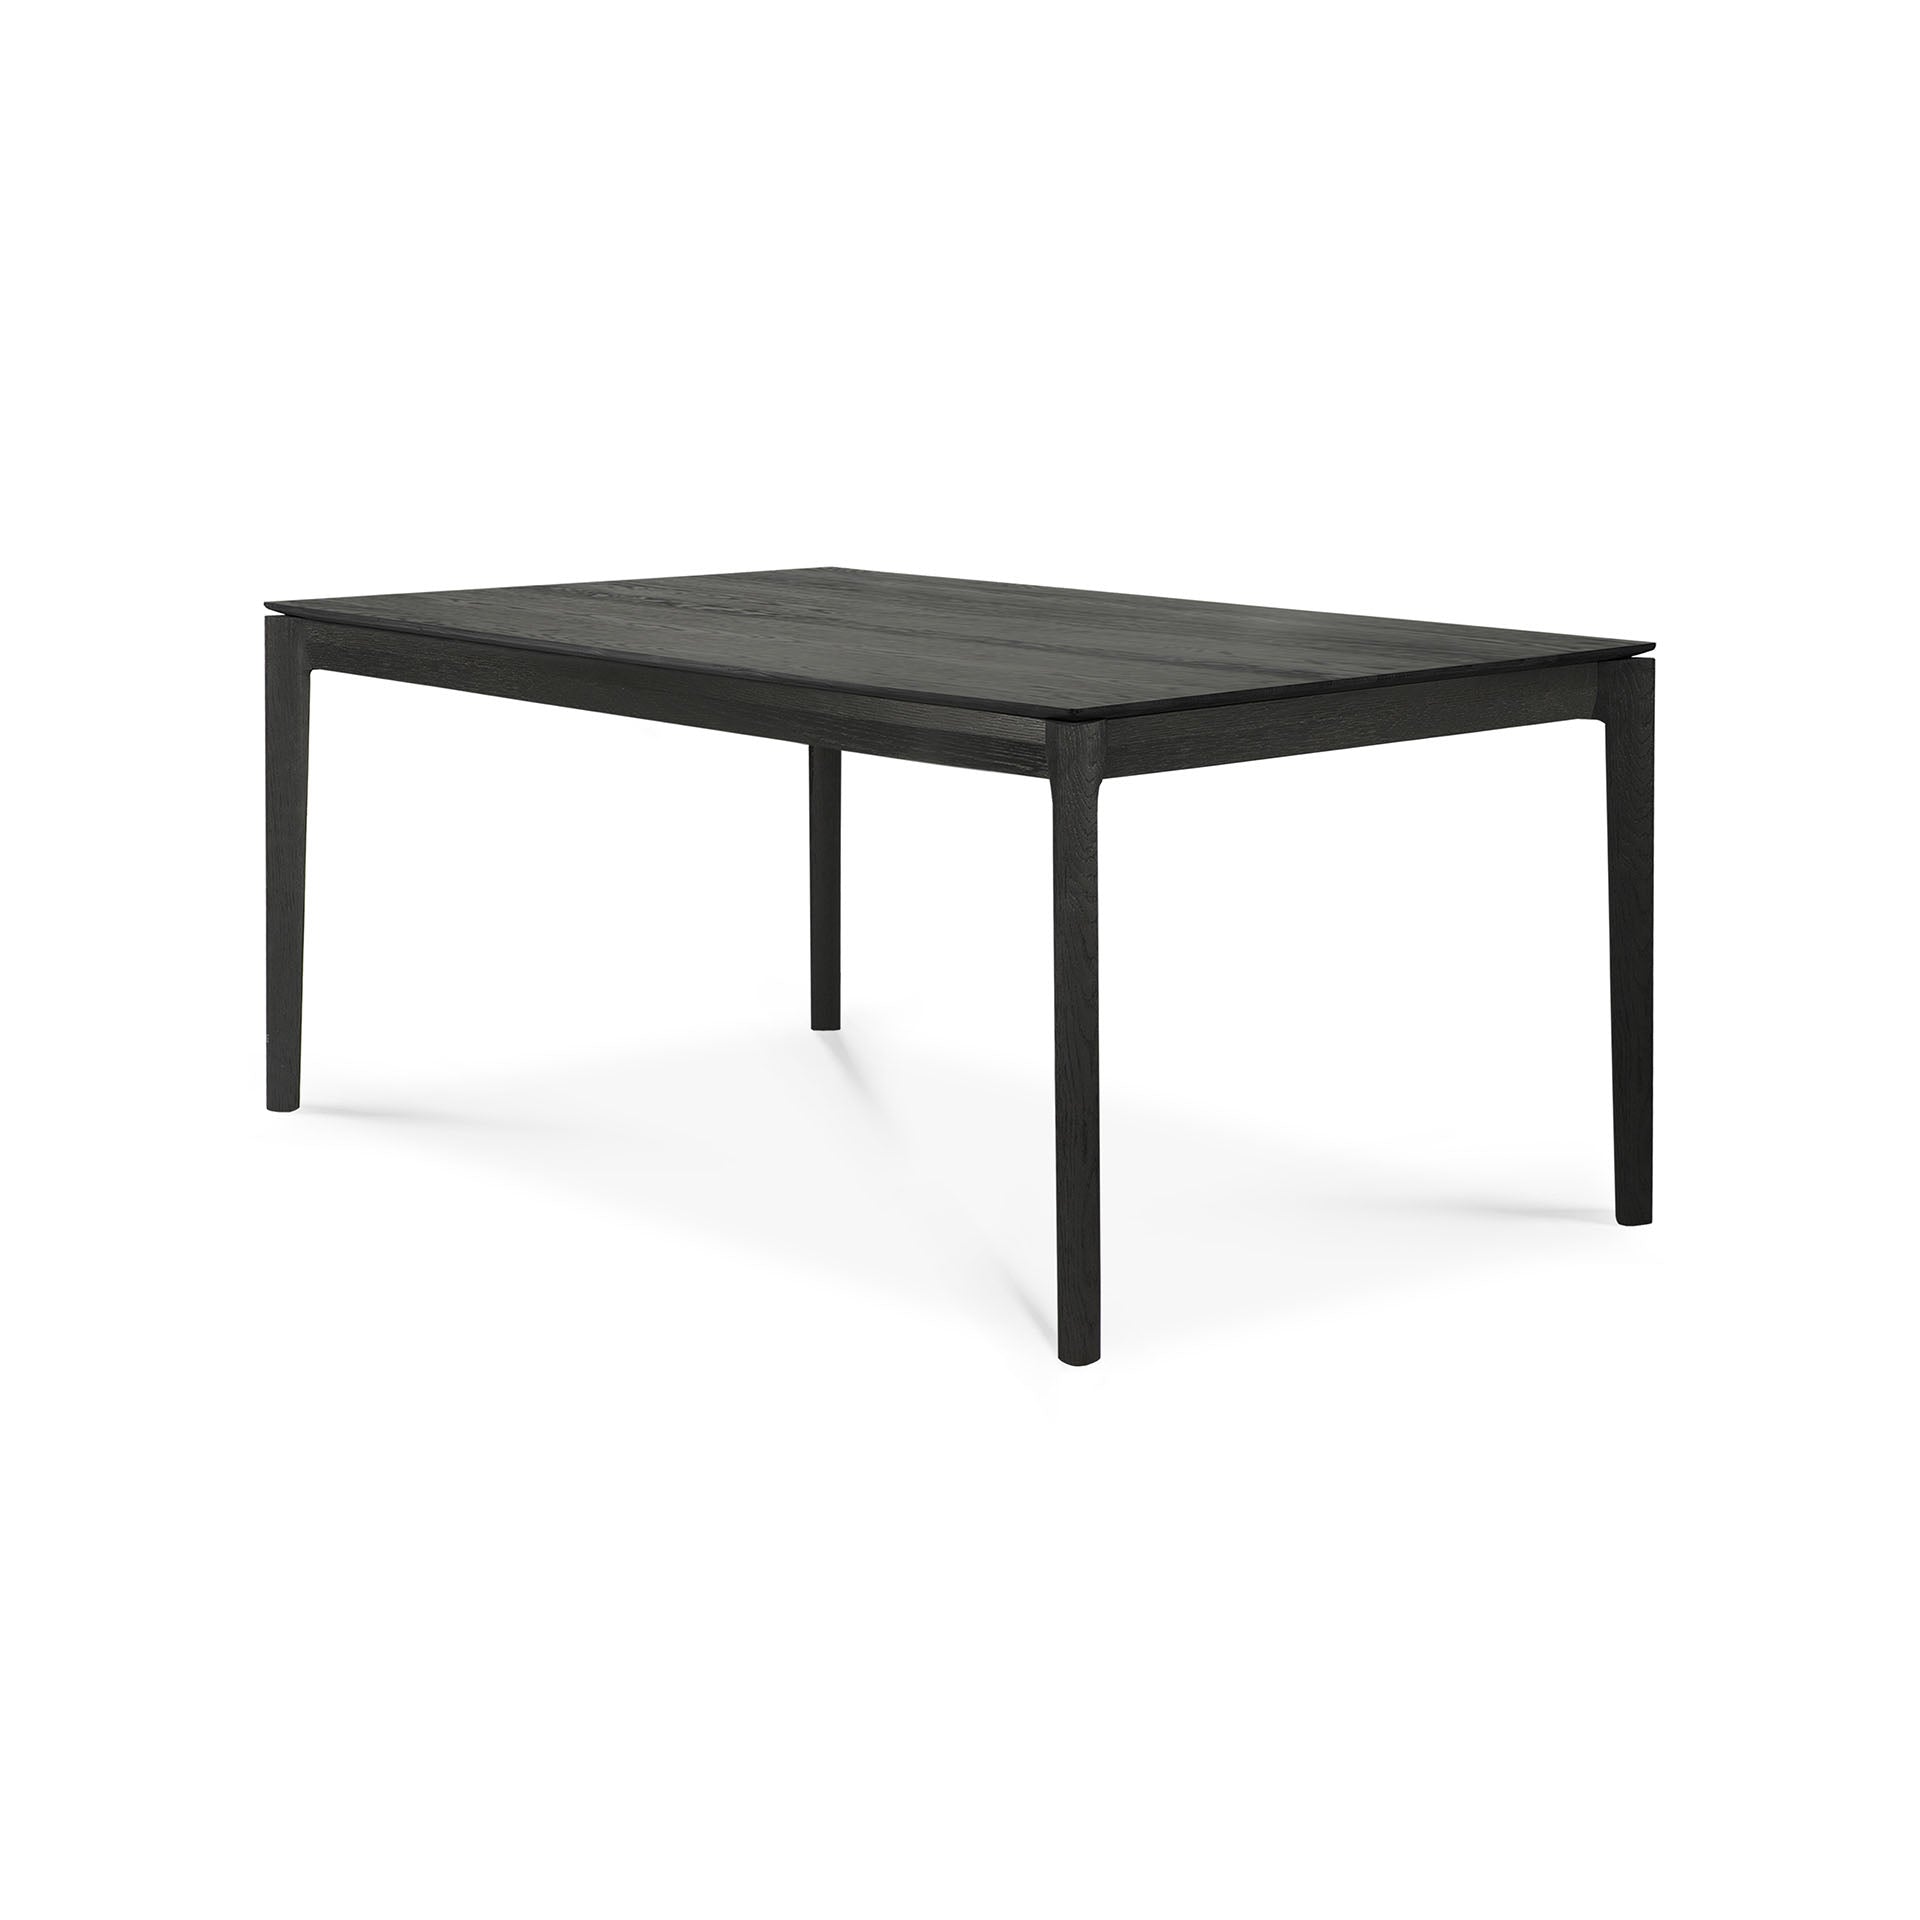 比利時原裝進口實木傢俬 - 伸縮系列 - Bok系列黑色橡木可伸縮餐桌